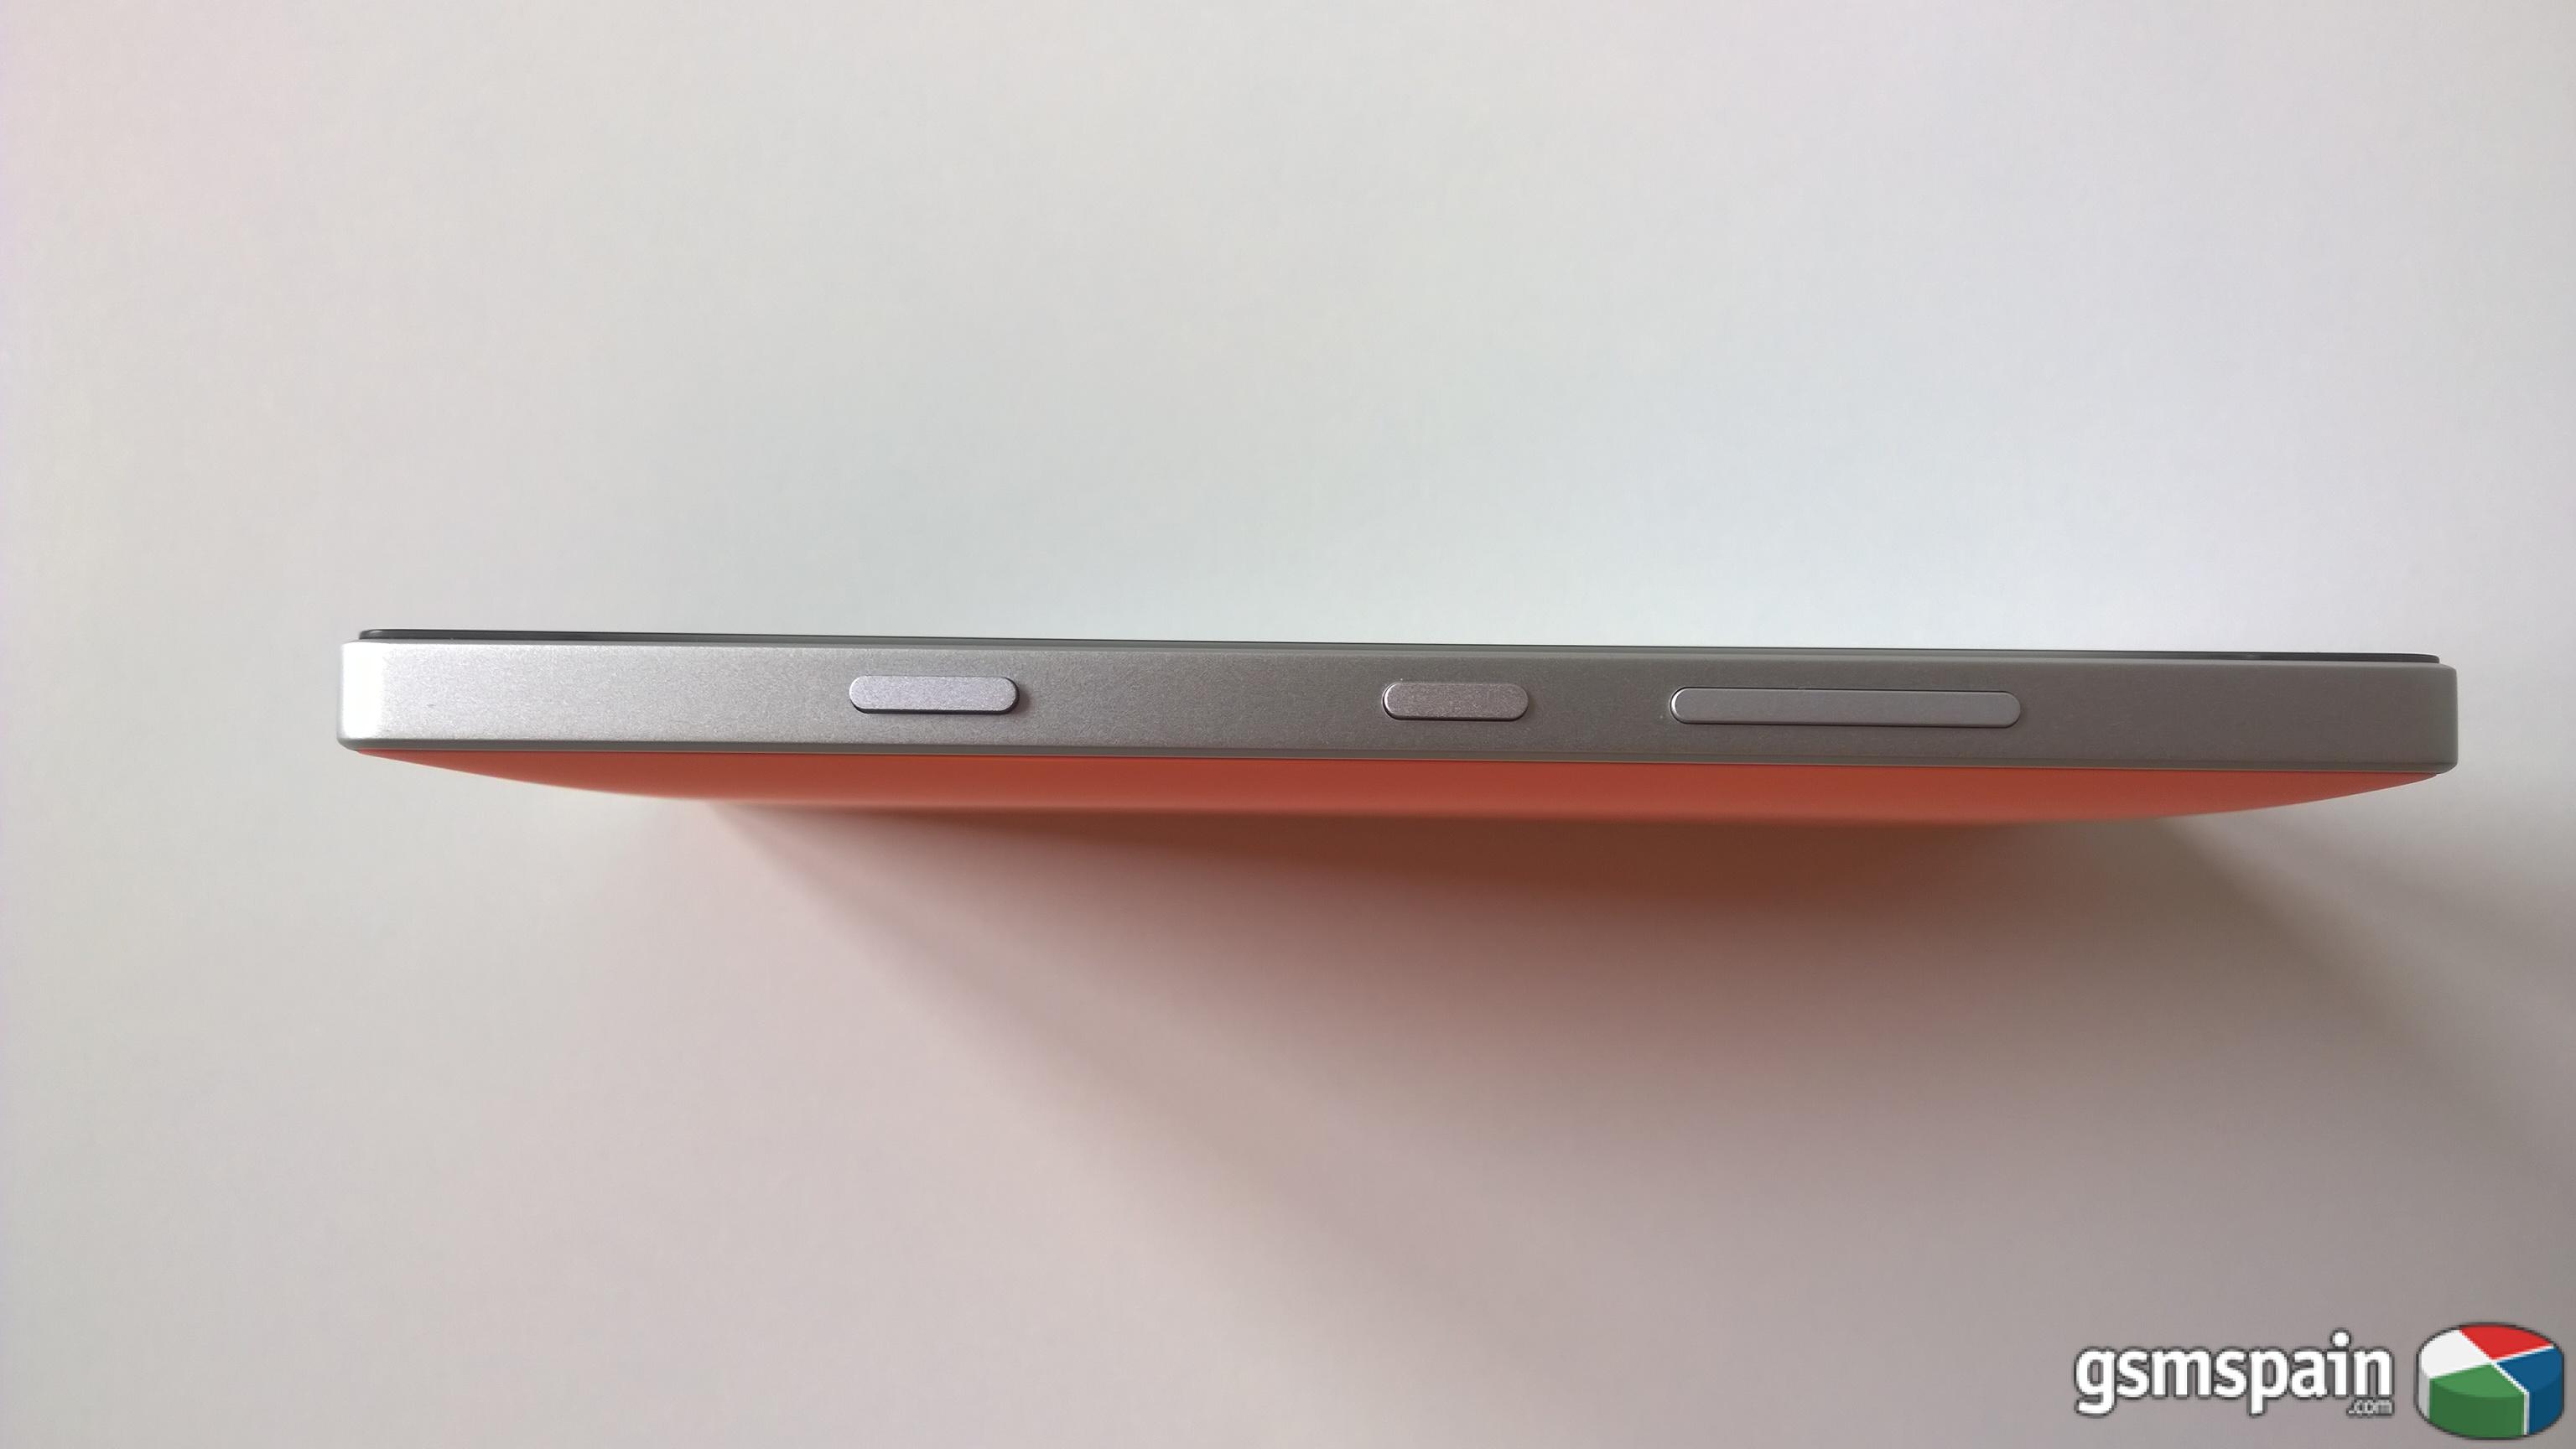 [AYUDA] Lumia 930, y el problema del adhesivo de la pantalla...